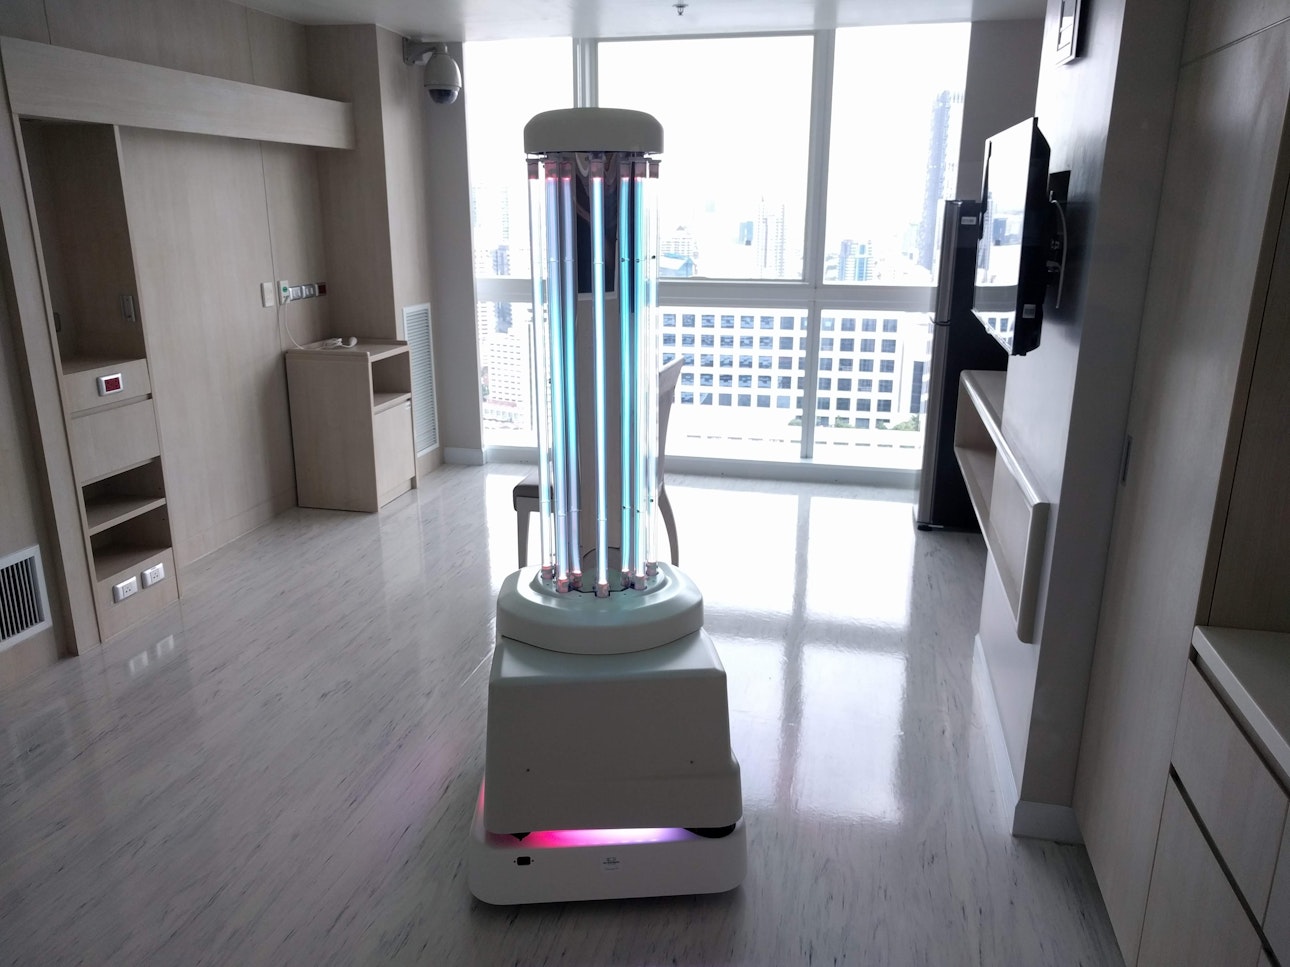 Danish robots fighting coronavirus in China